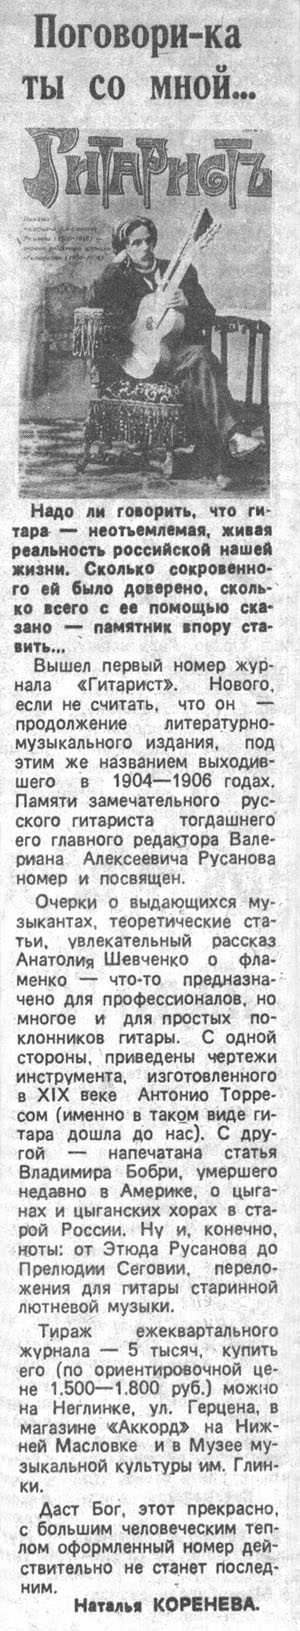 Публикация в газете "Вечерний клуб" (Москва)